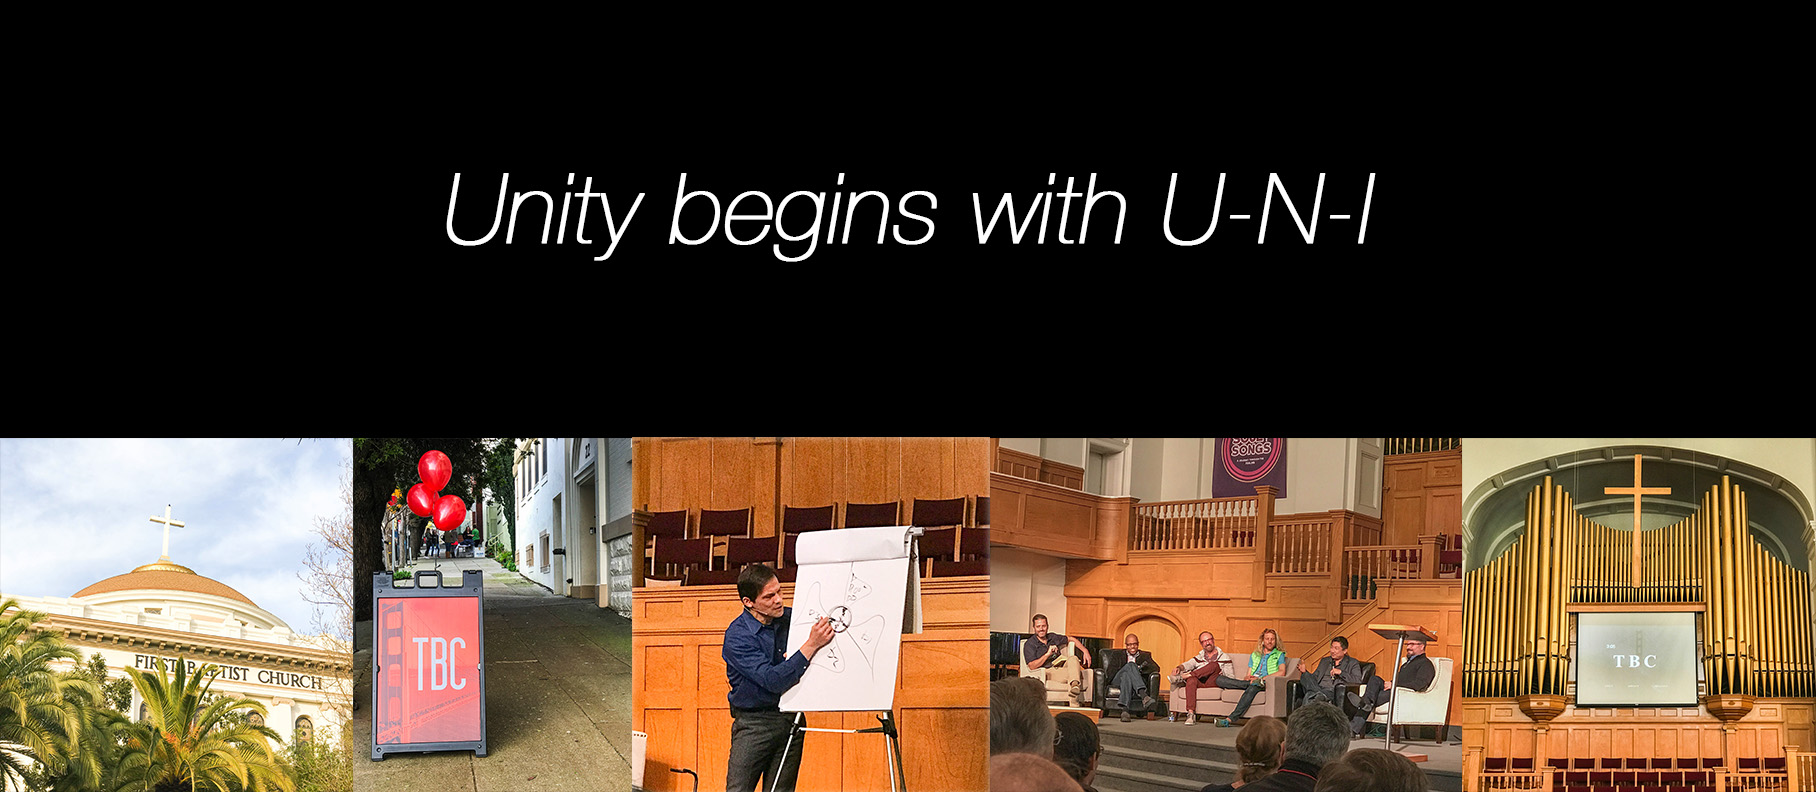 Unity begins with U-N-I